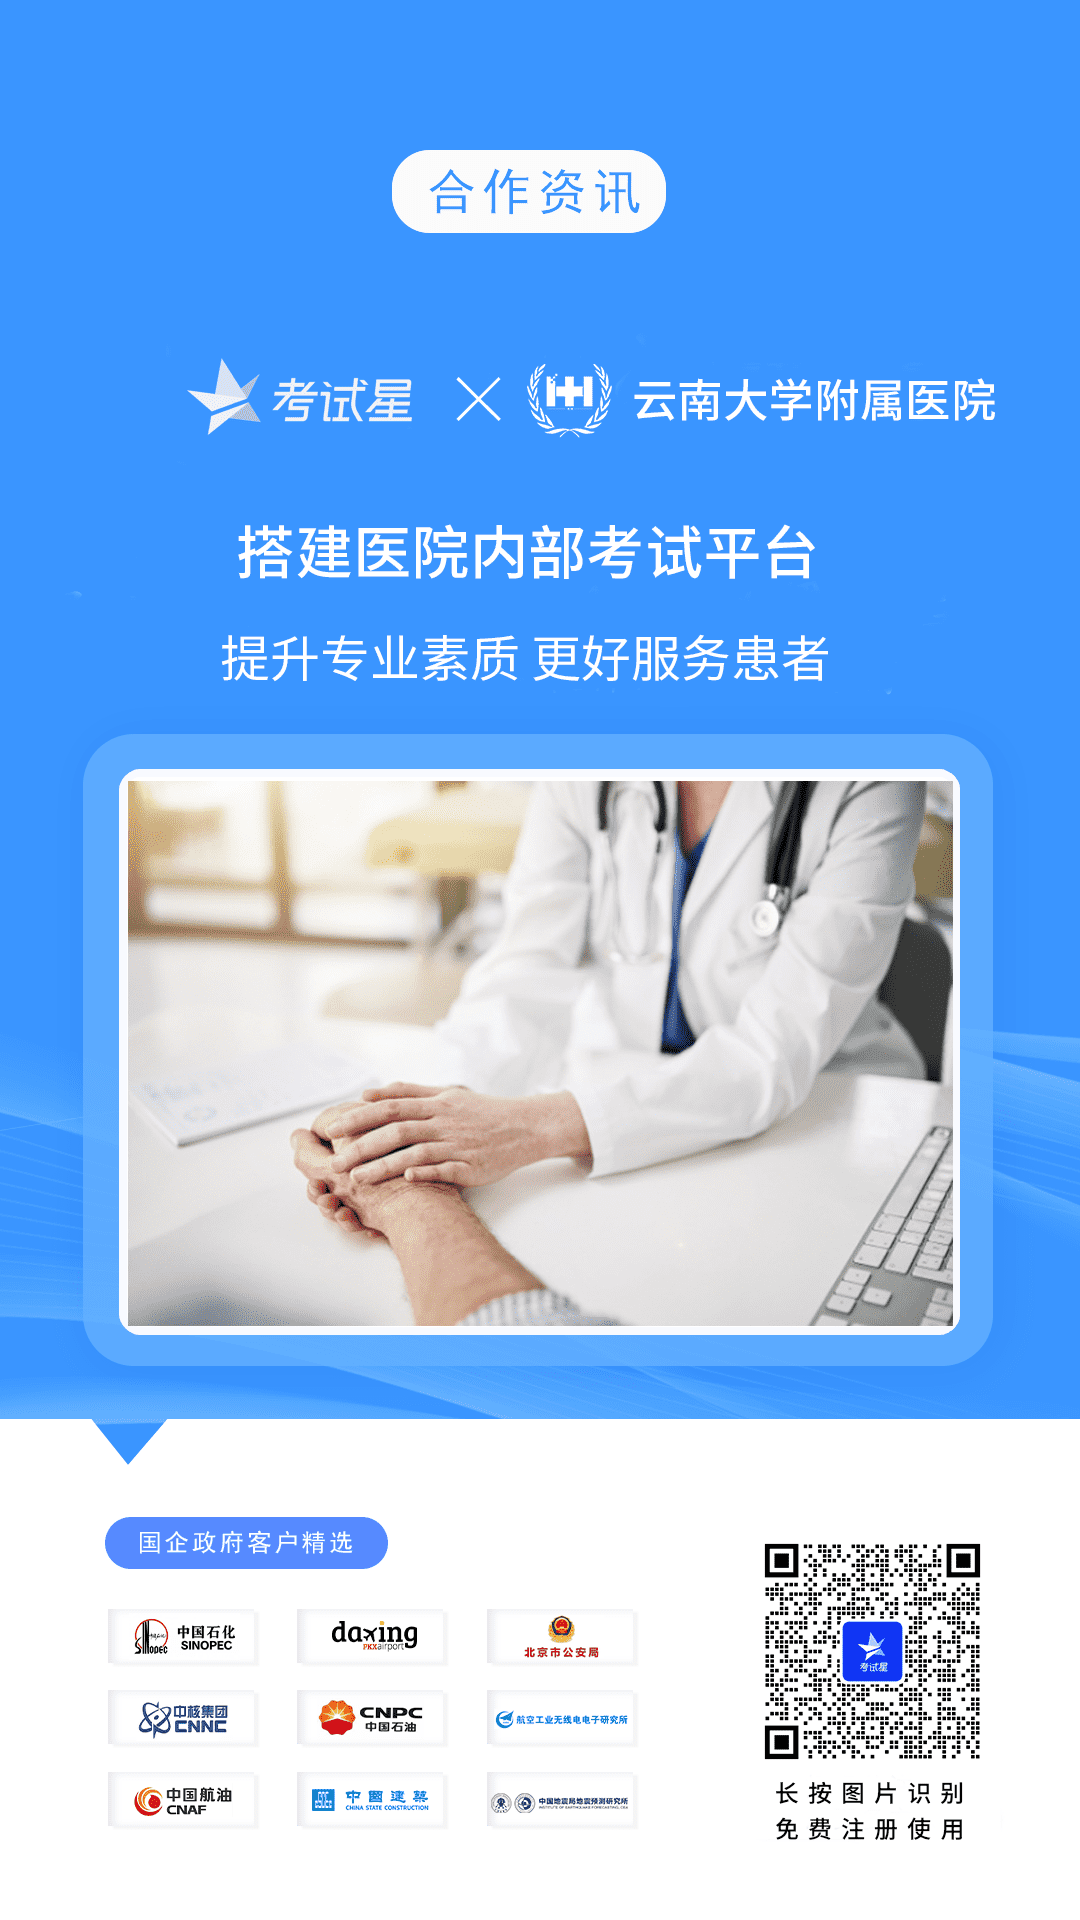 云南大学附属医院-考试星医院内部考试平台